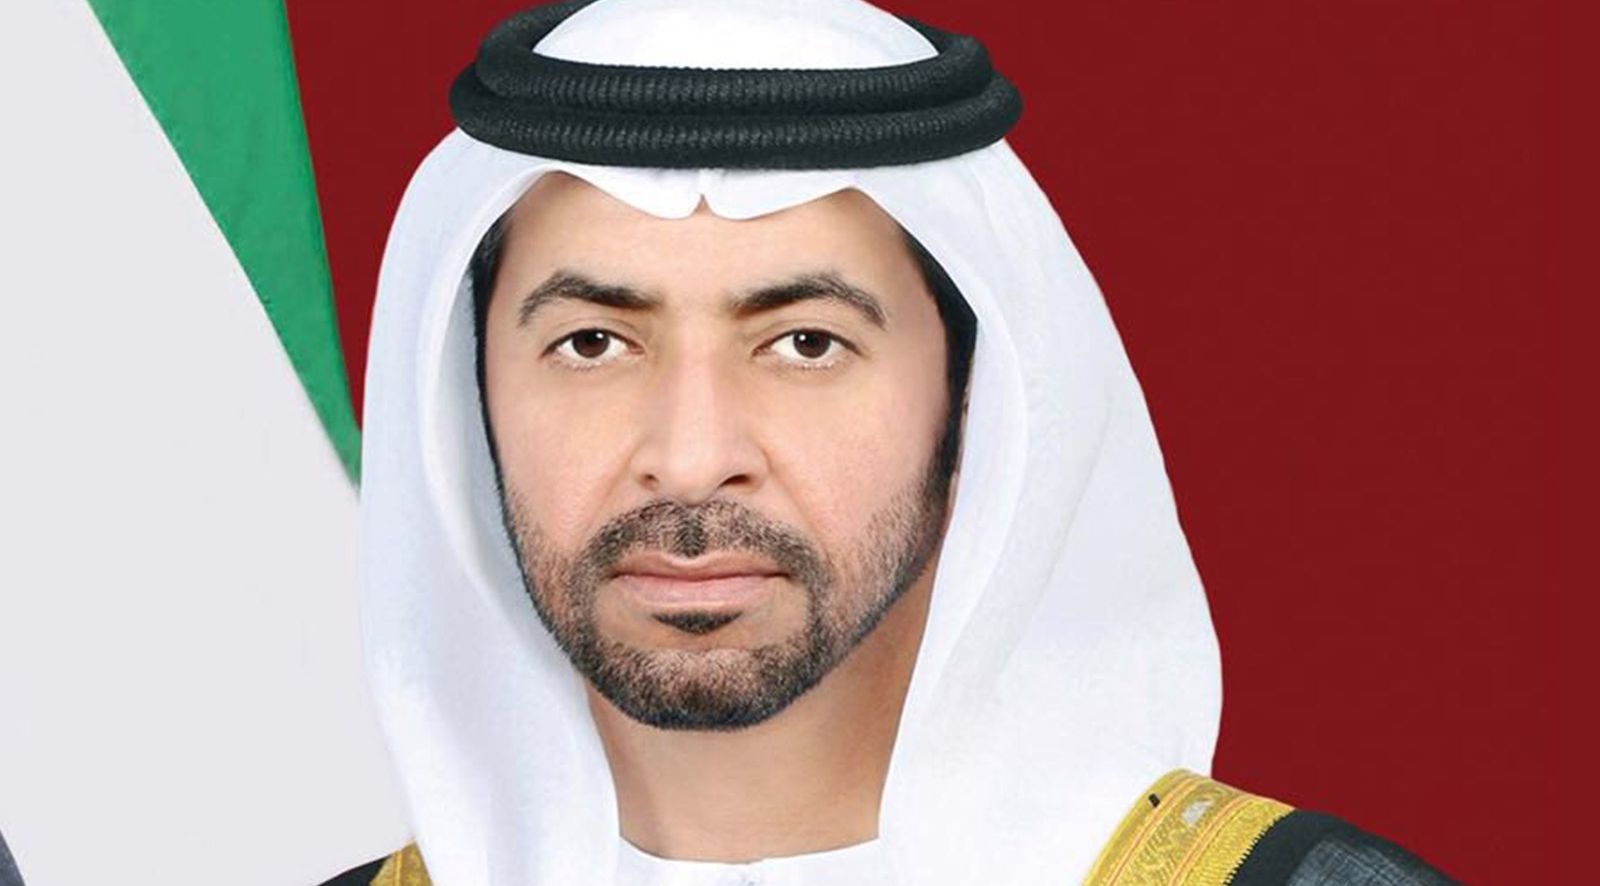 UAE expresses pride in its volunteers and humanitarian work